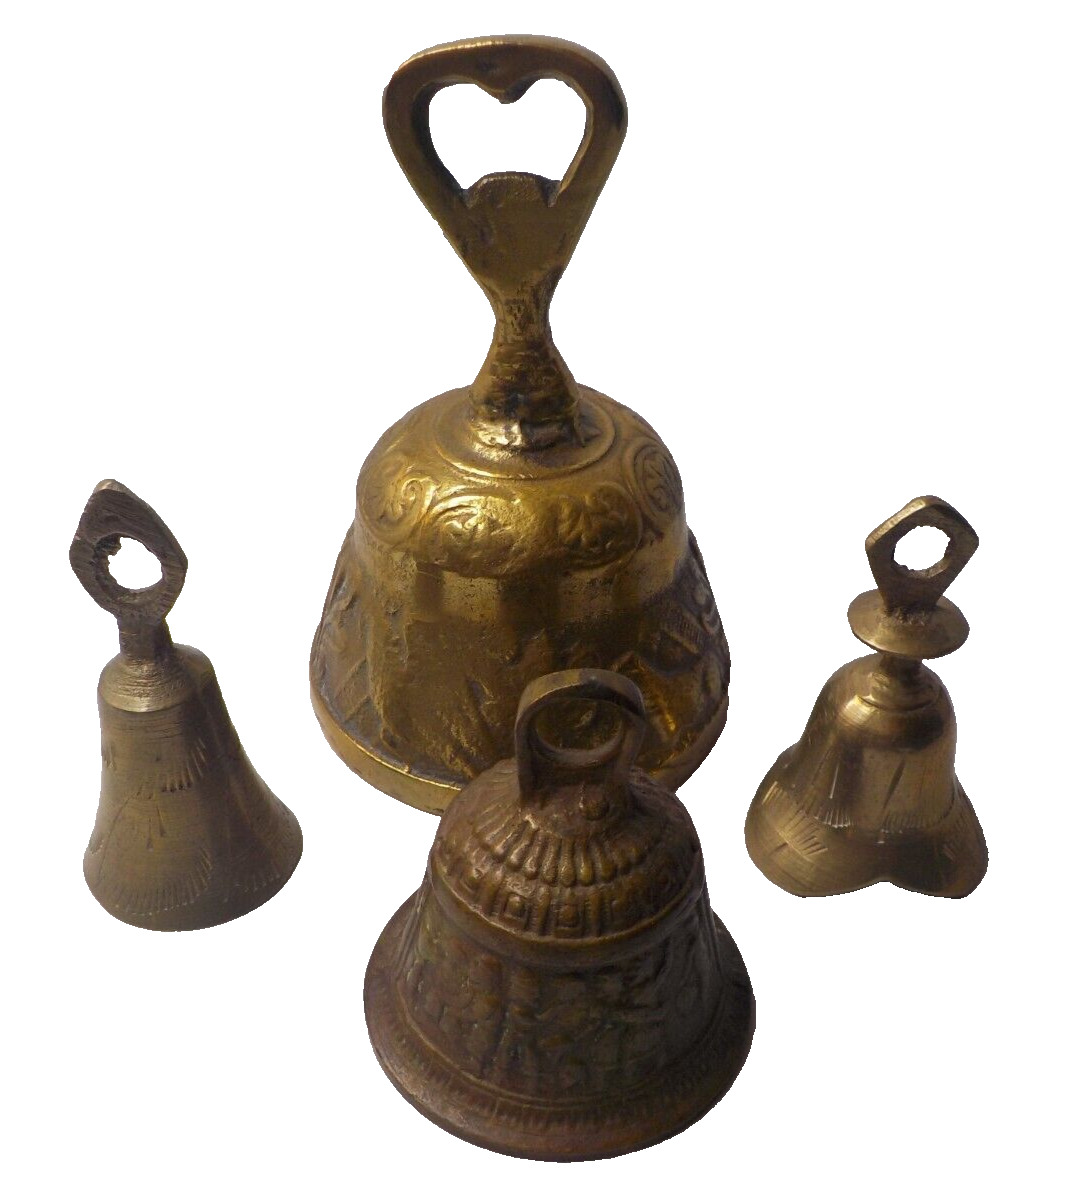 4 Vintage Brass Bells Dinner Service Handheld Mid East design